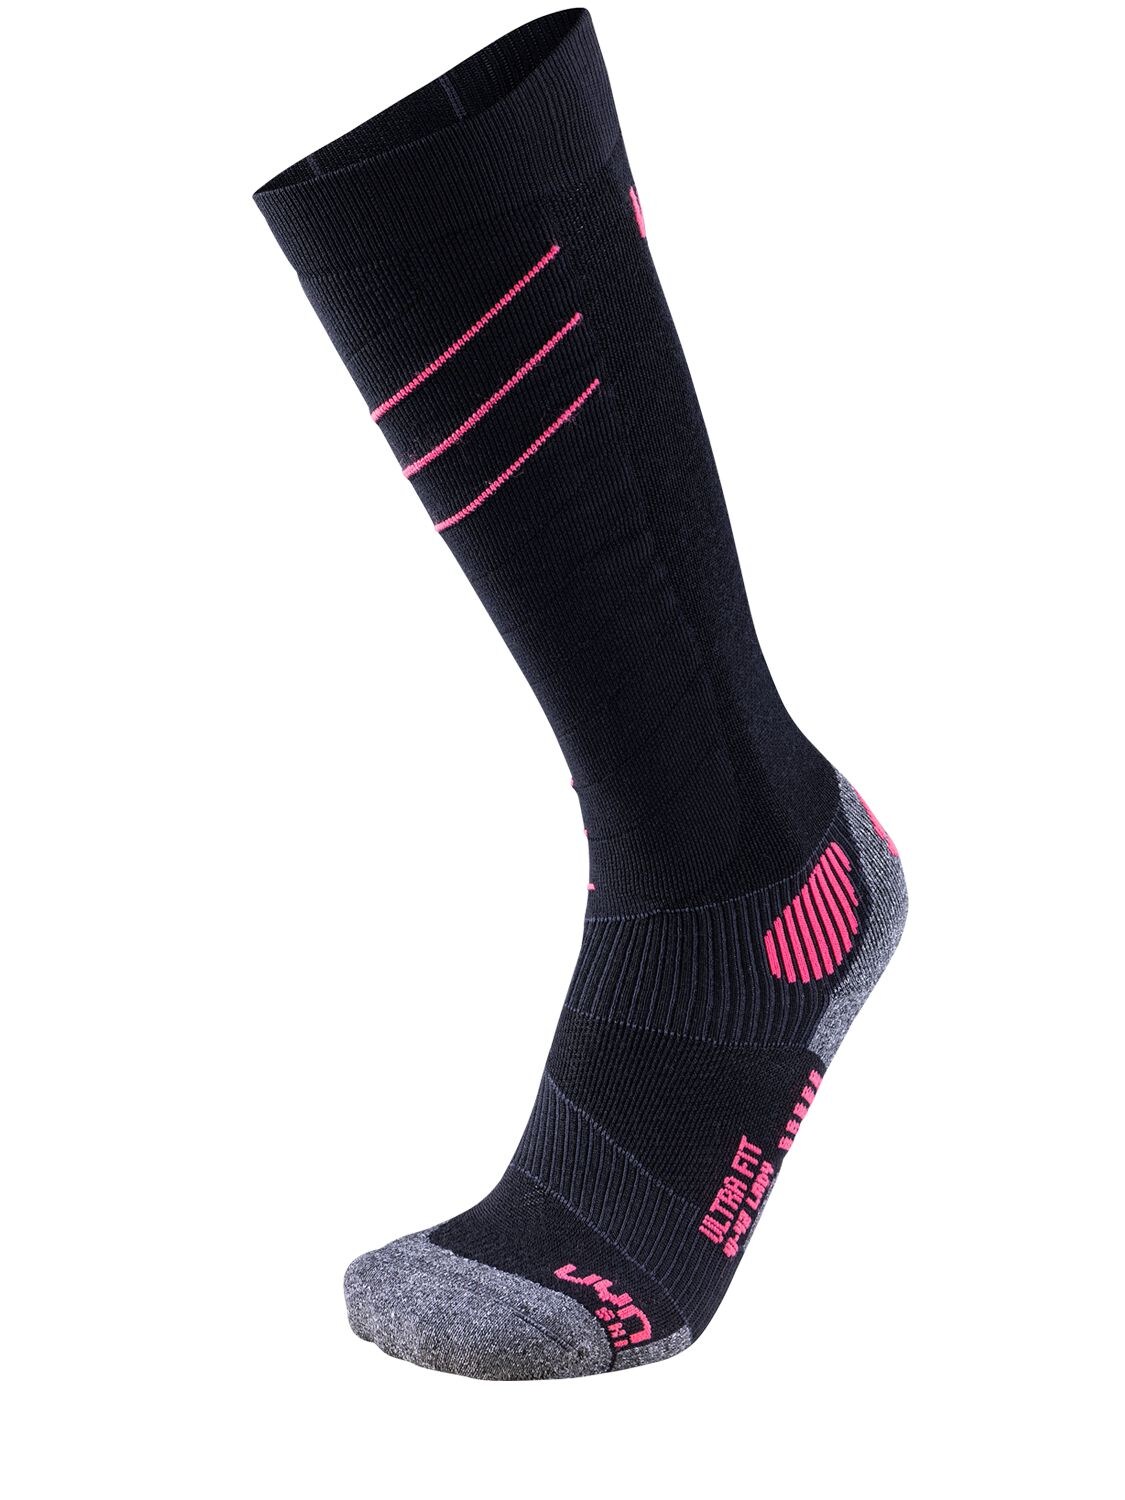 Uyn Ultra Fit Women's Wool Blend Ski Socks In Black,pink